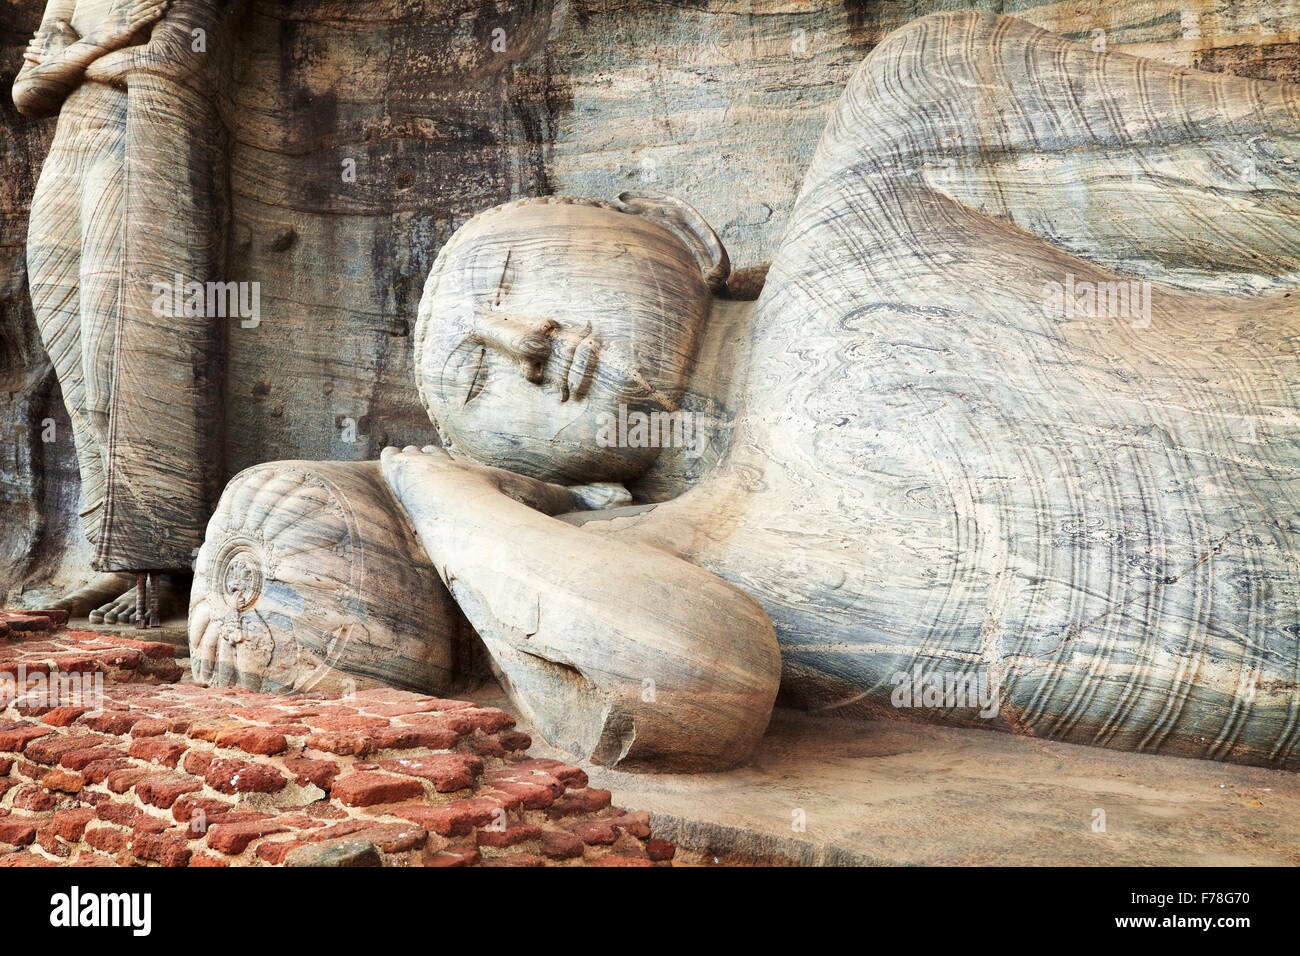 Sri Lanka - Bouddha statue de pierre en Gal Vihara, Polonnaruwa, ancienne ville, site du patrimoine mondial de l'UNESCO Banque D'Images